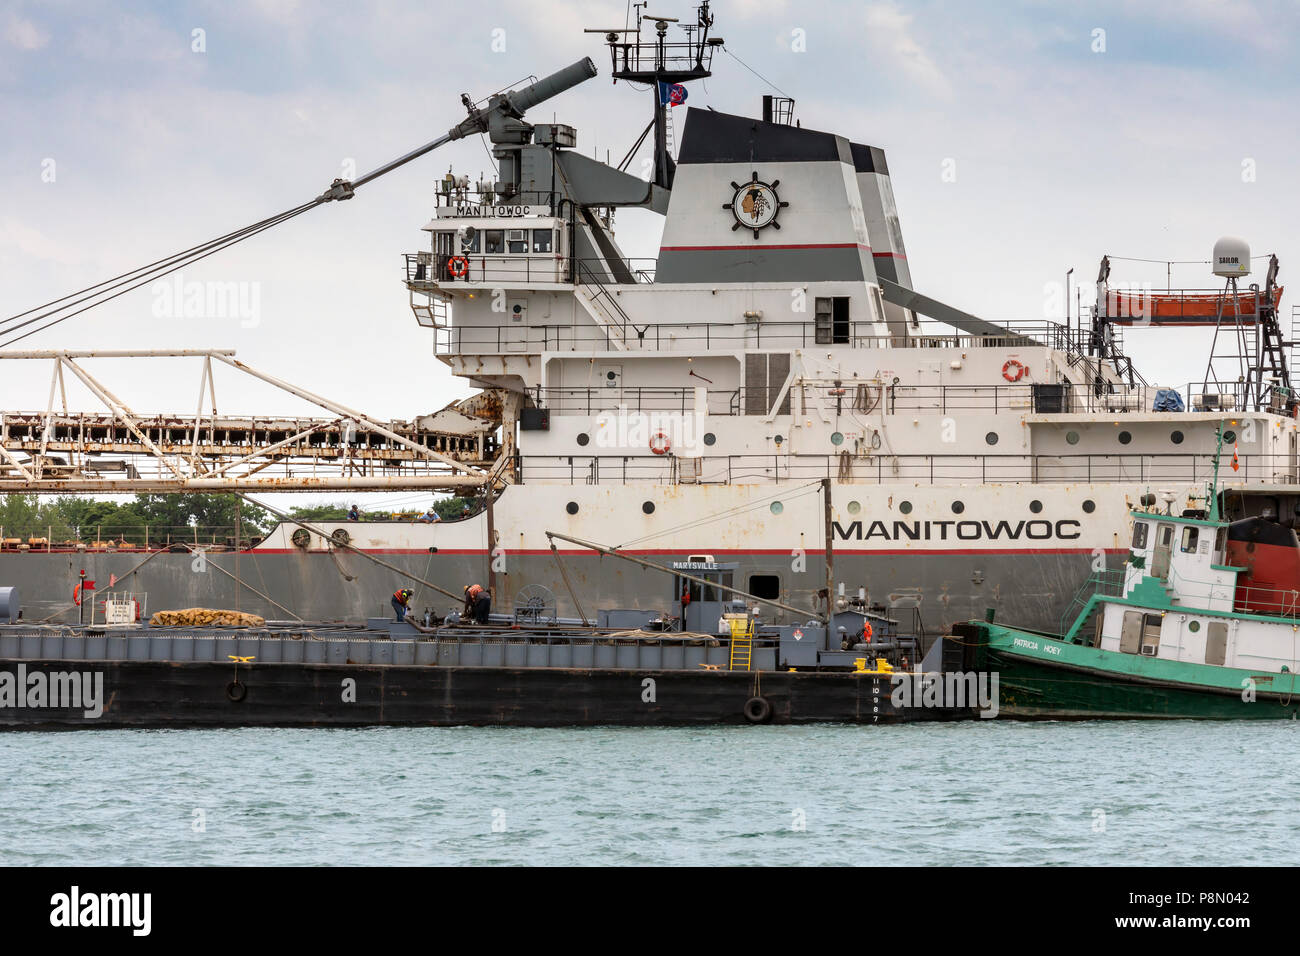 Detroit, Michigan - mentre ancorata nel fiume Detroit, i grandi laghi bulk carrier cargo Manitowoc prende il carburante da la chiatta Marysville. Foto Stock